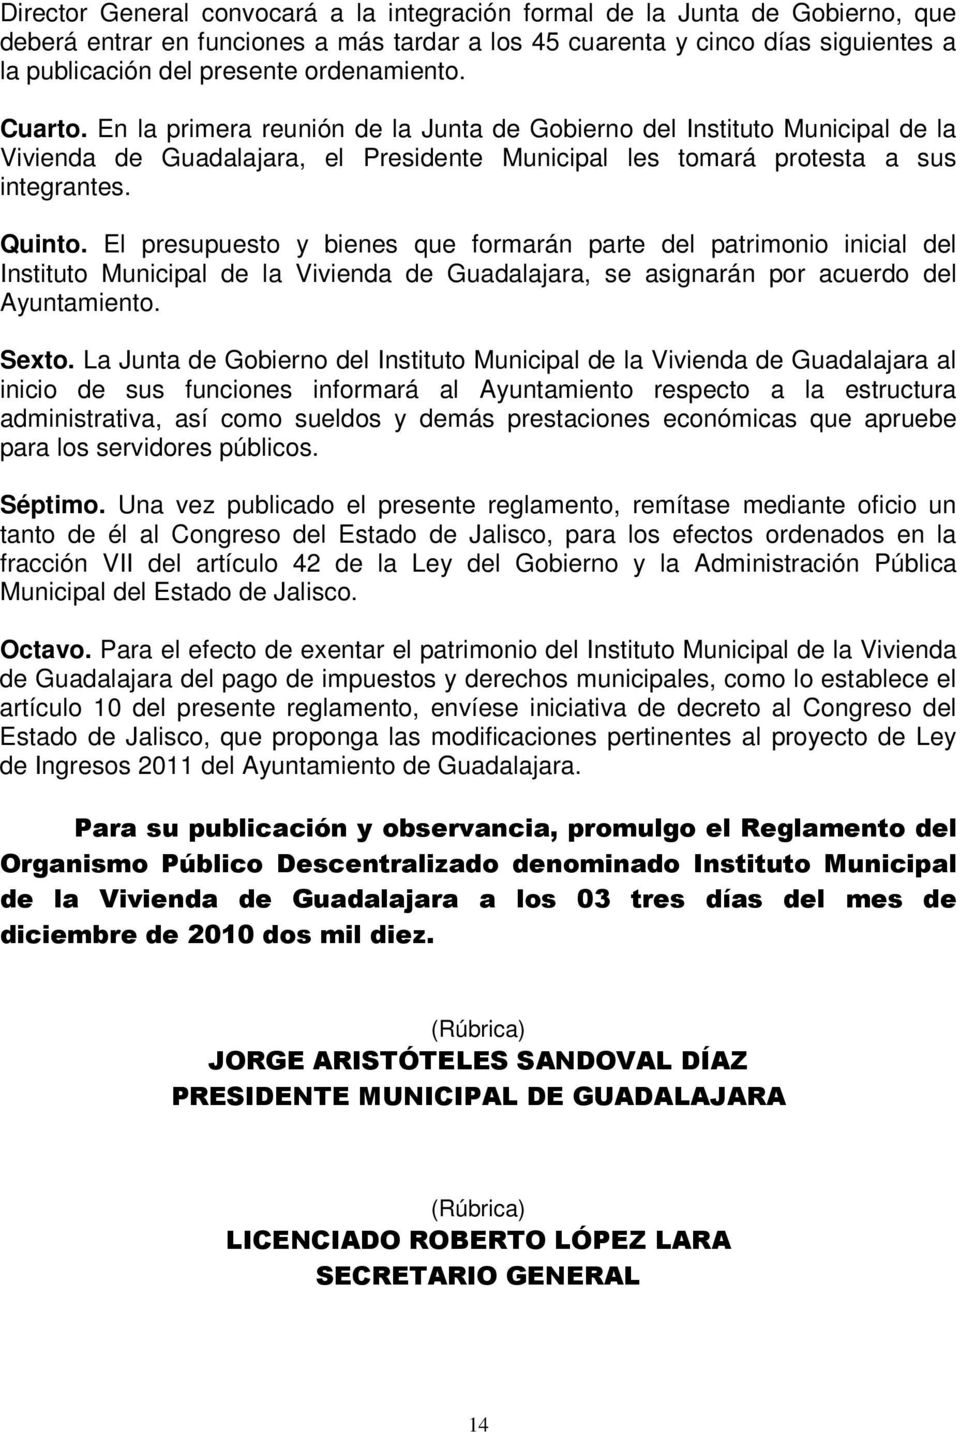 El presupuesto y bienes que formarán parte del patrimonio inicial del Instituto Municipal de la Vivienda de Guadalajara, se asignarán por acuerdo del Ayuntamiento. Sexto.